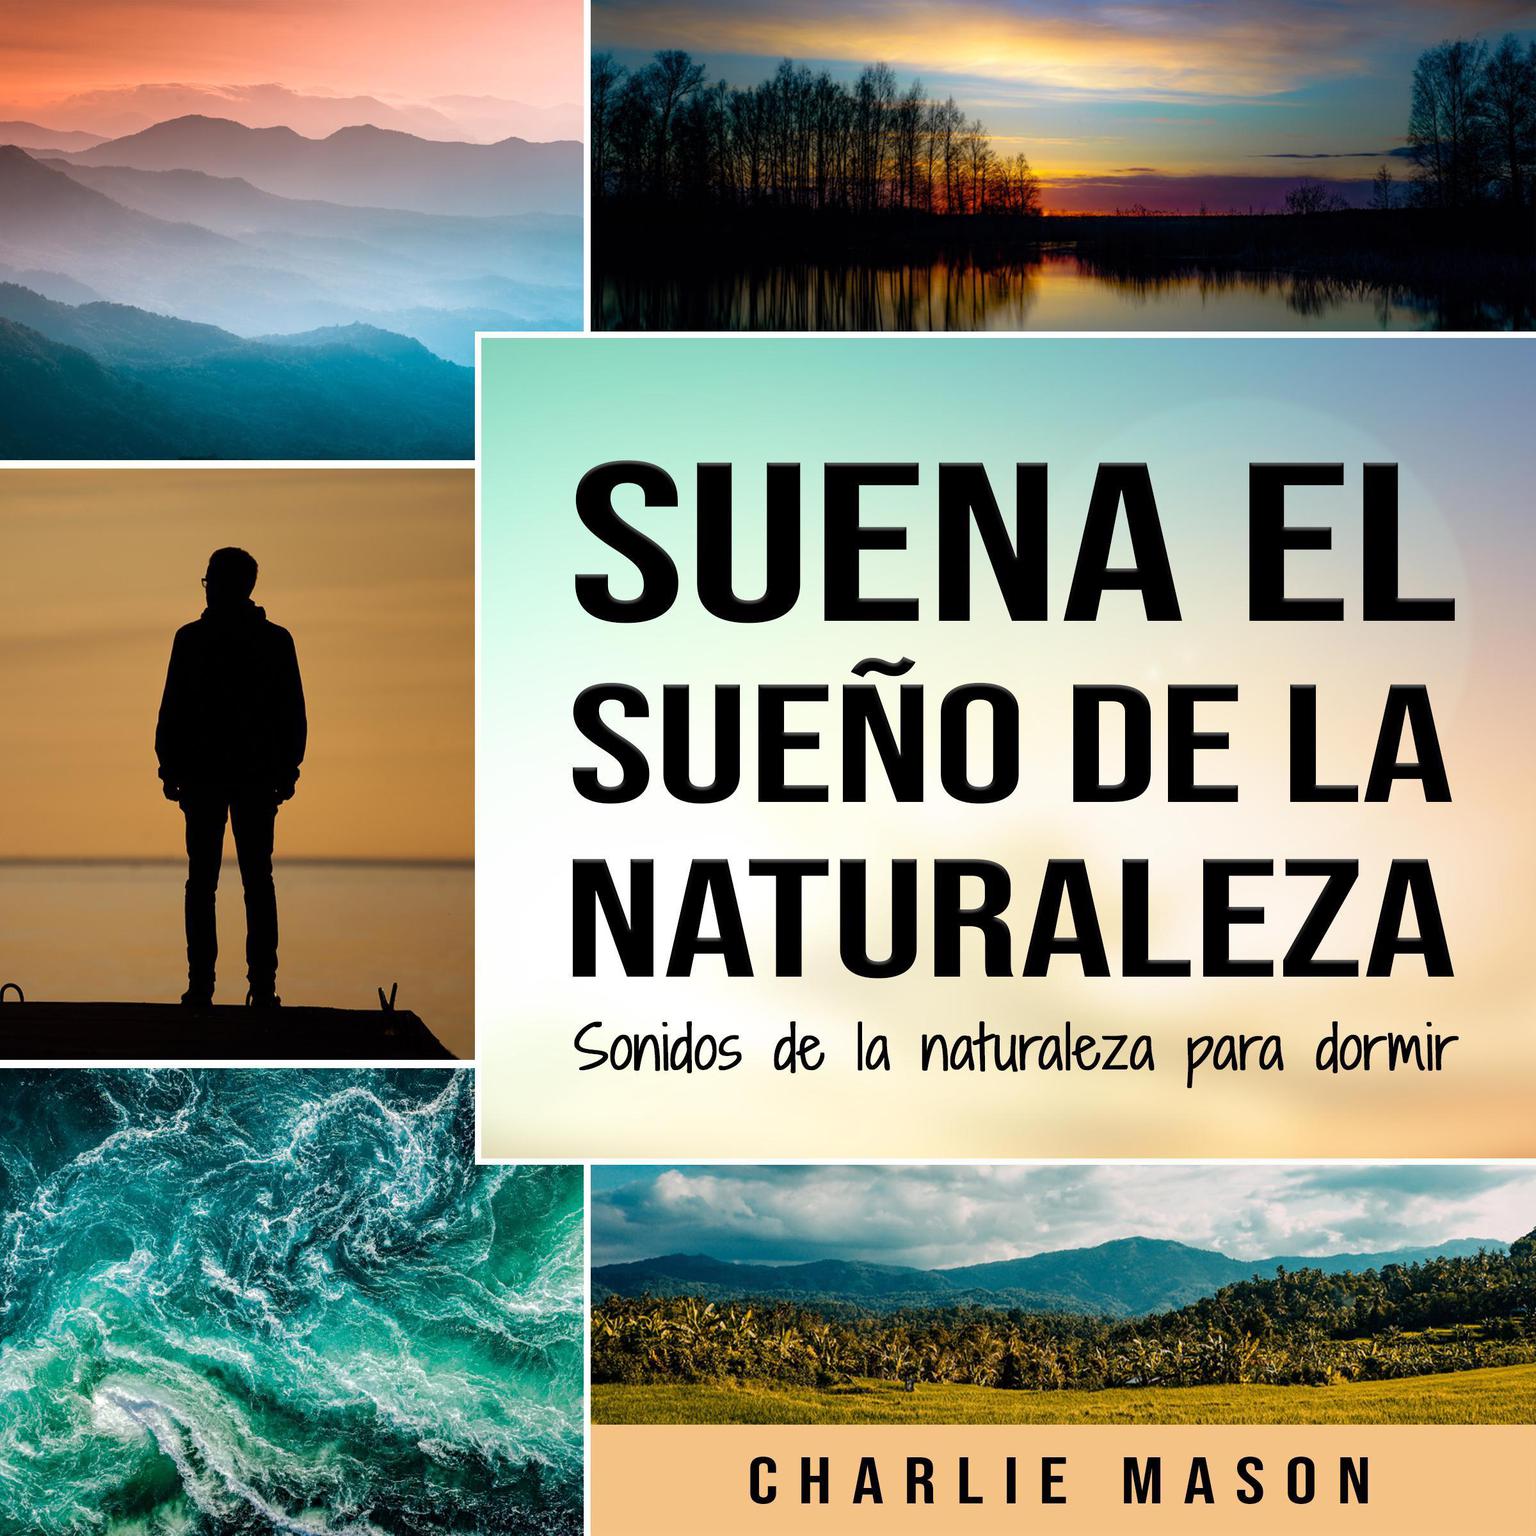 Suena el sueño de la naturaleza: Sonidos de la naturaleza para dormir Audiobook, by Charlie Mason